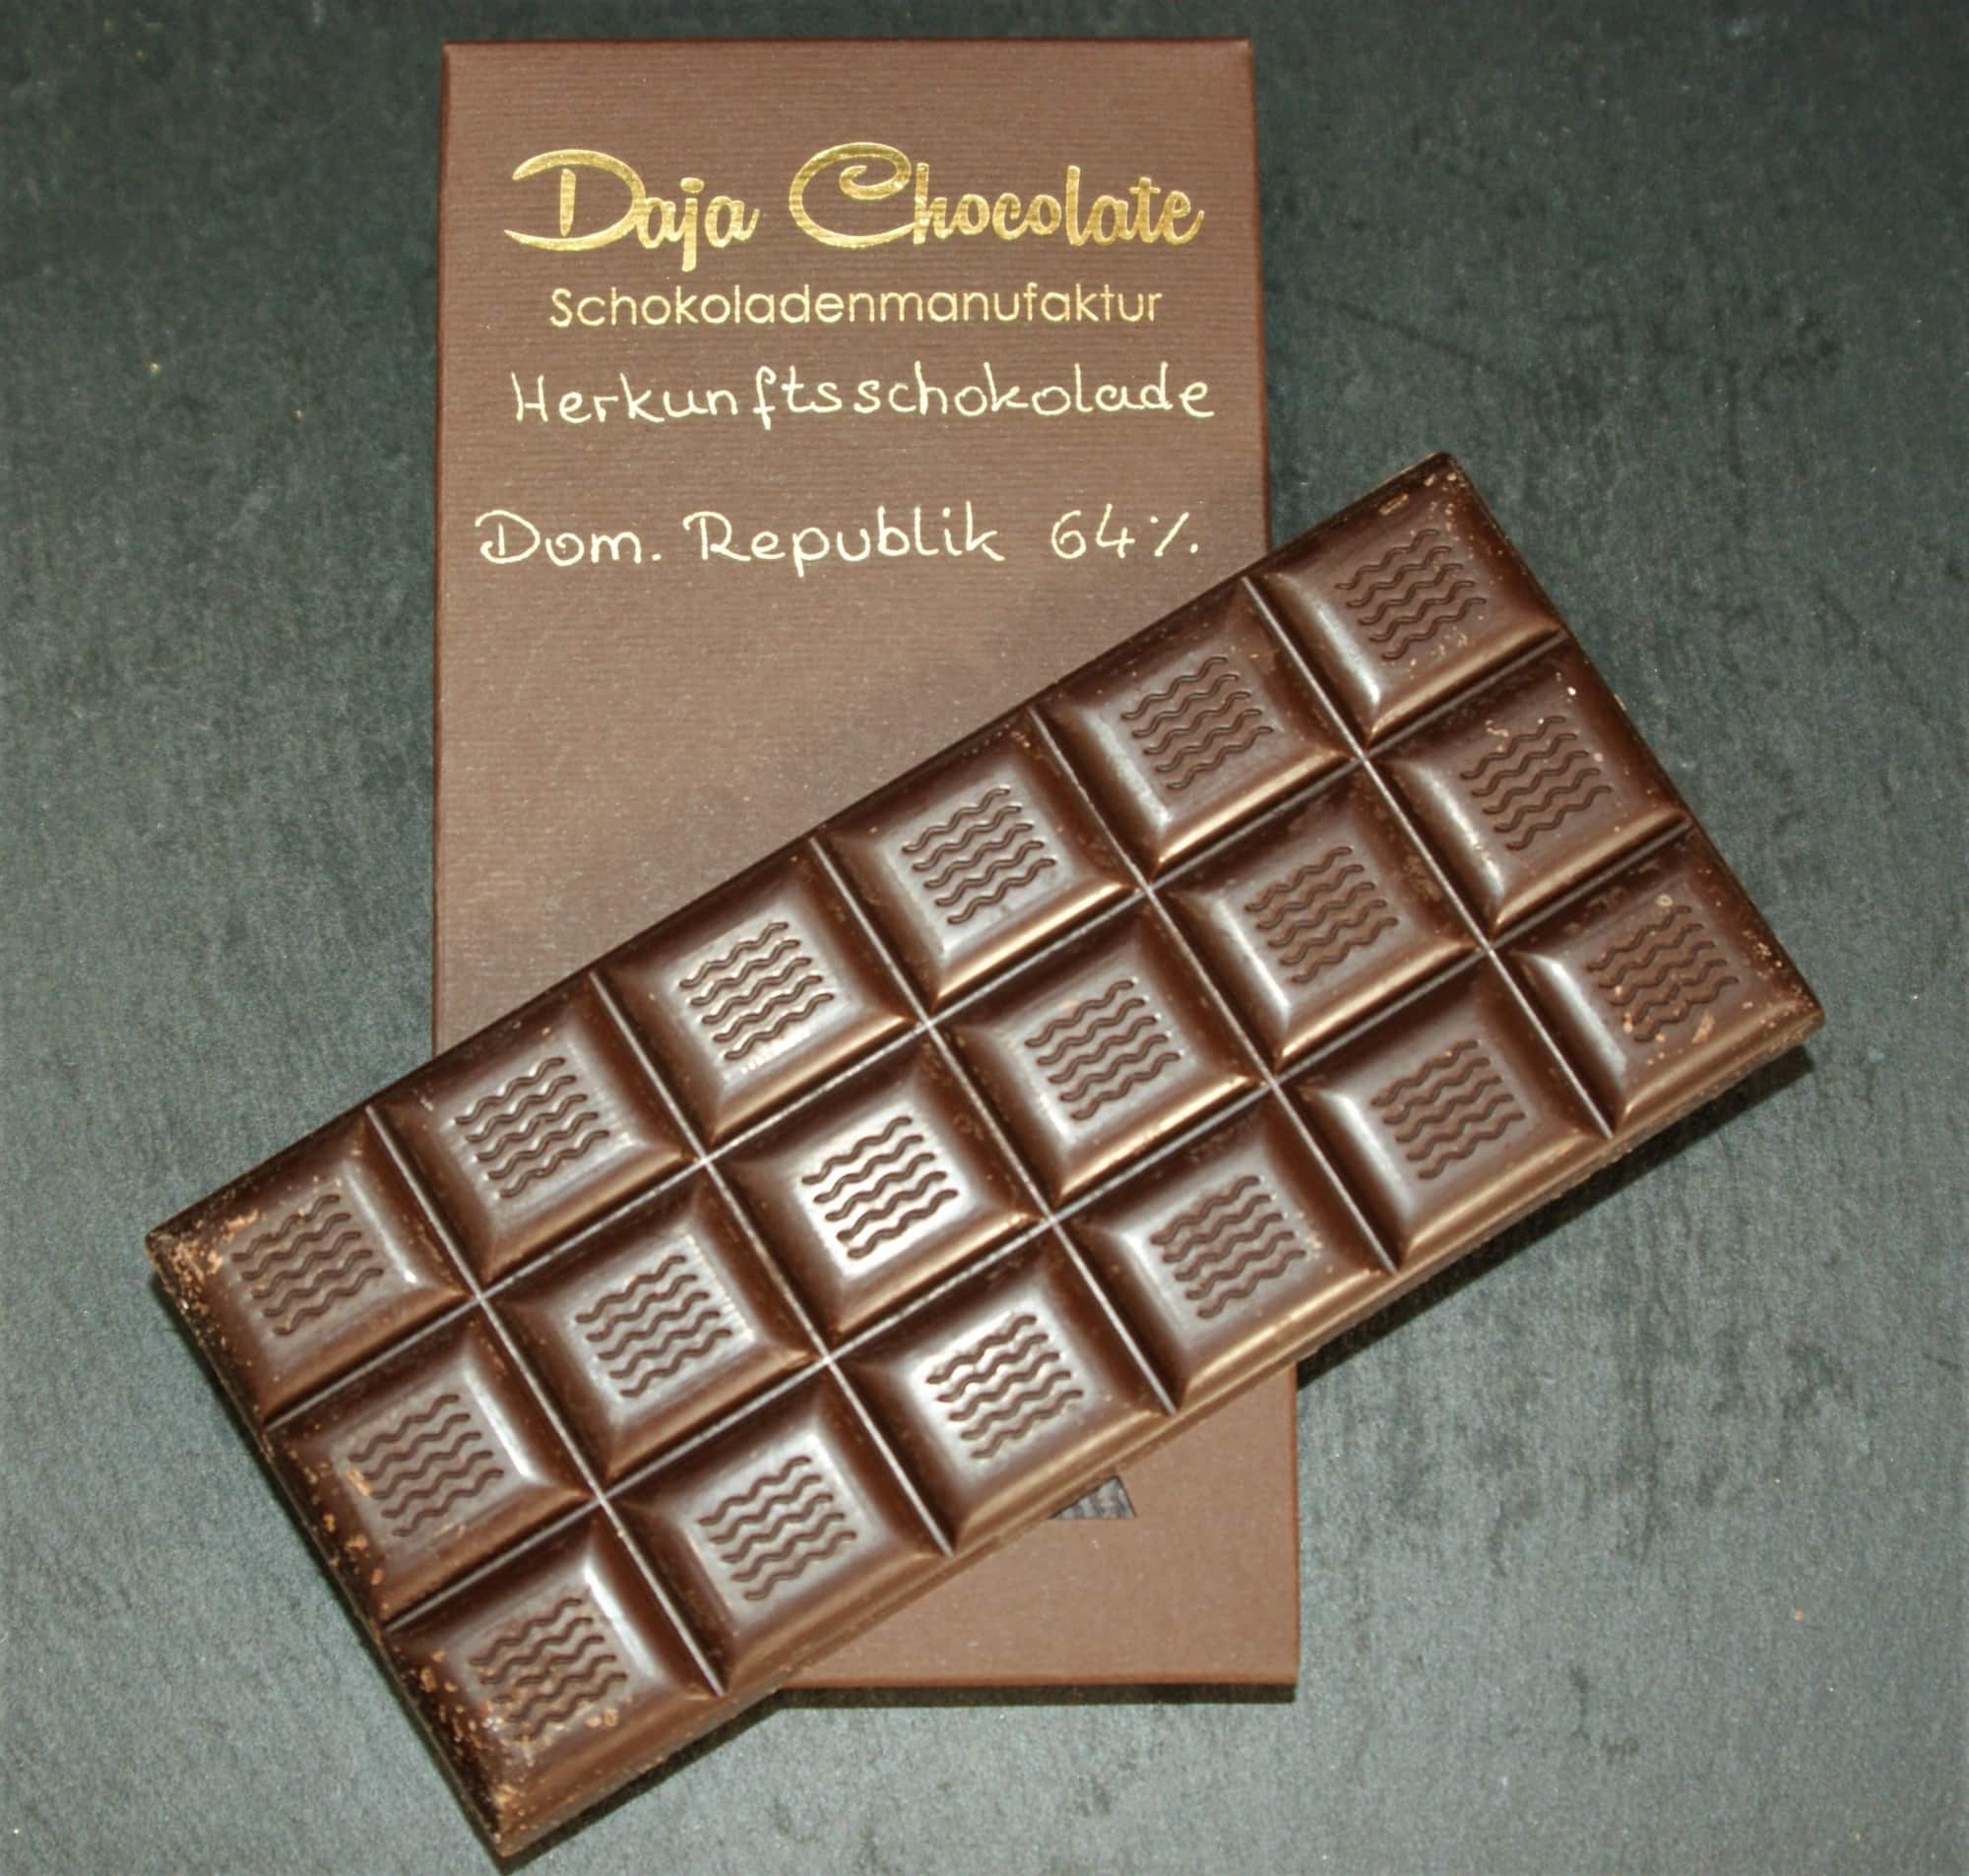 Herkunftsschokolade Dominikanische Republik 64% Lactosefrei und Vegan- 